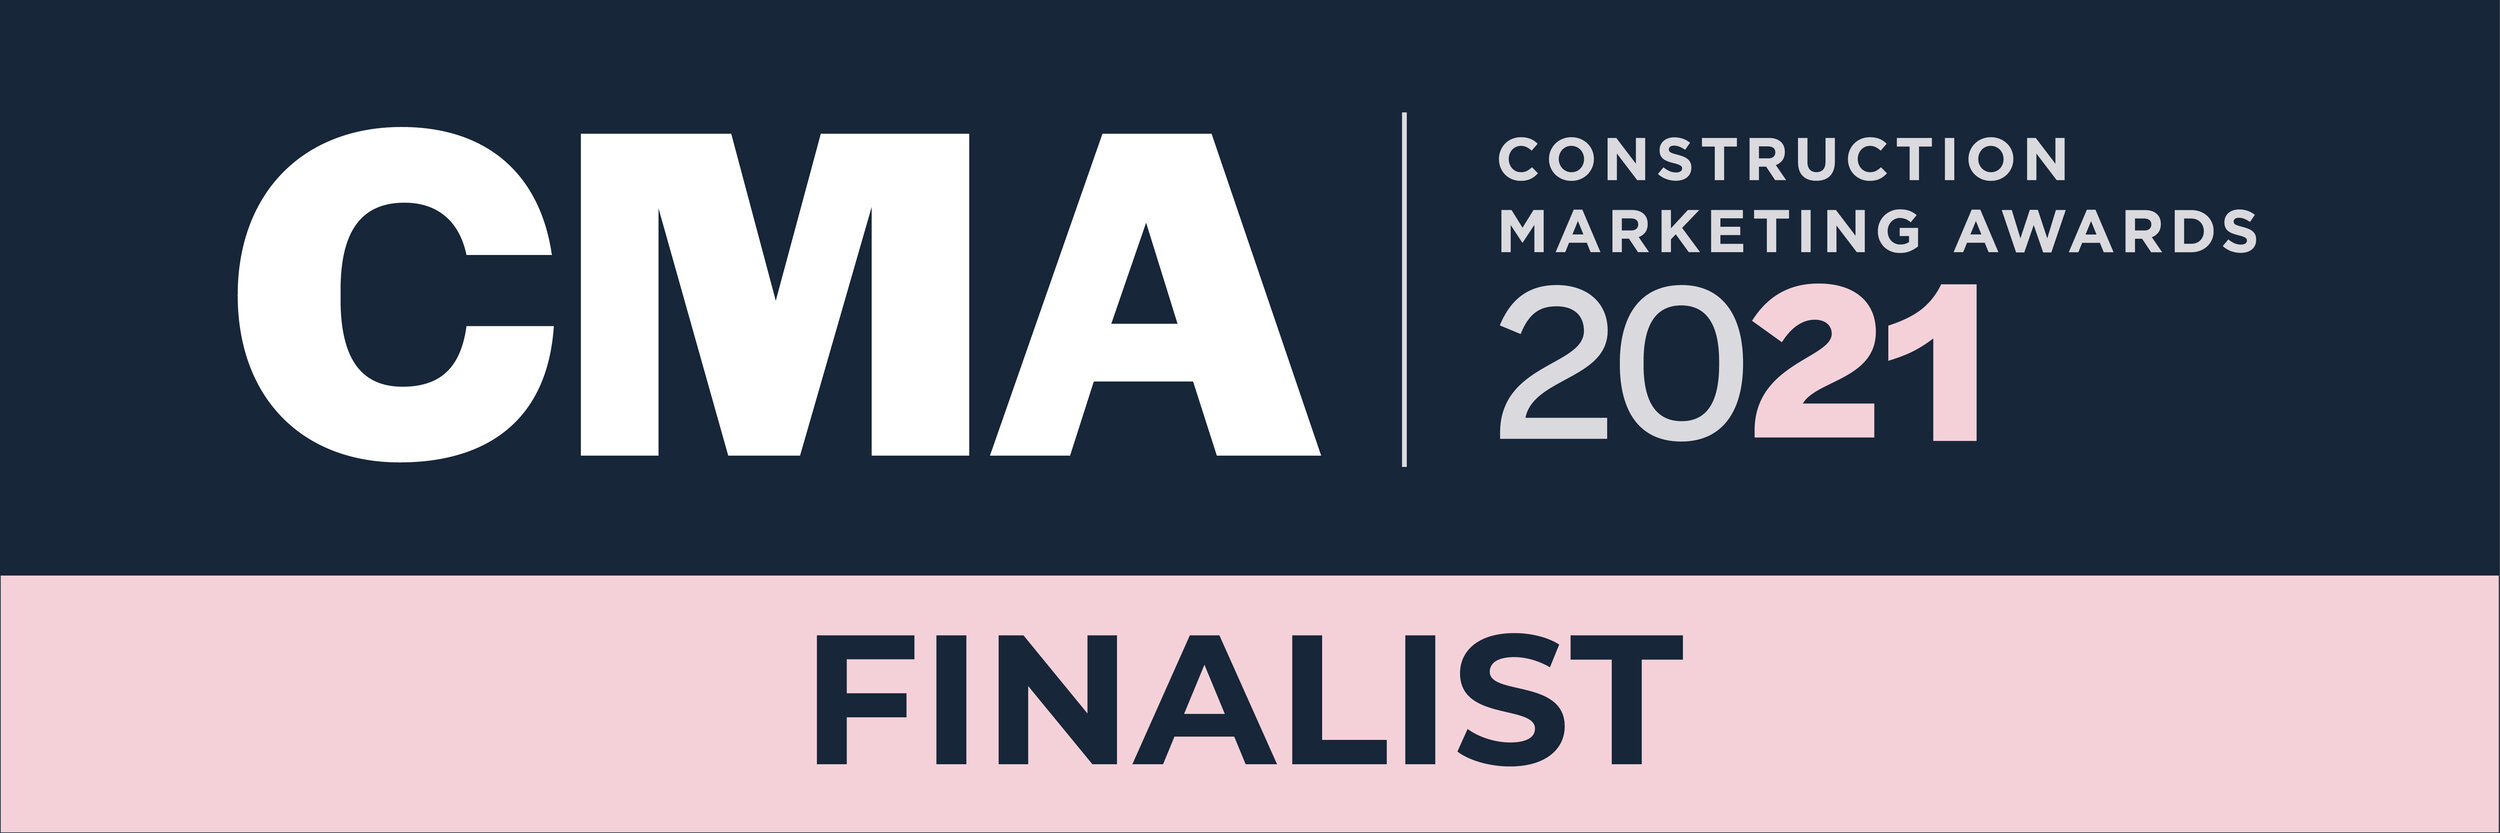 ¡Somos finalistas de la CMA 2021!